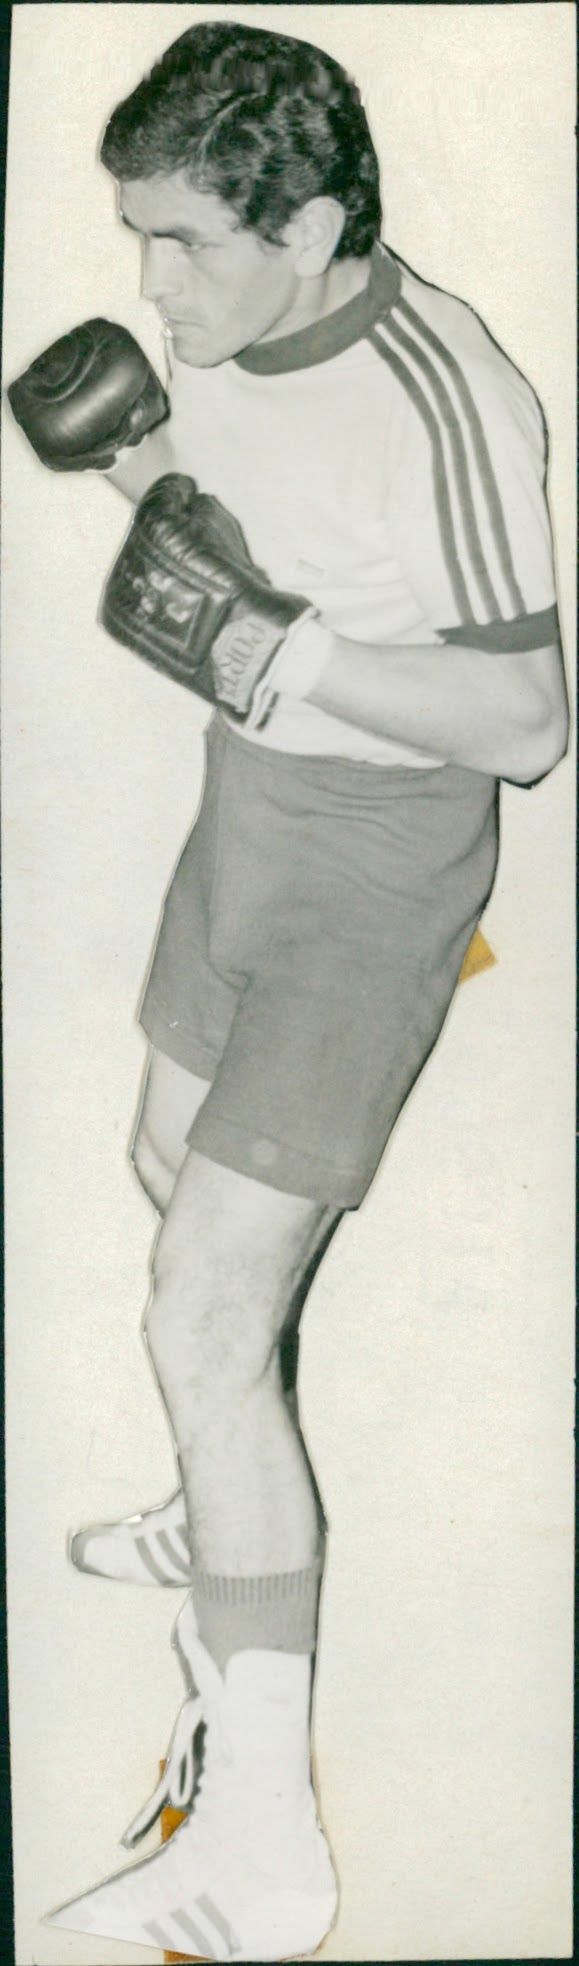 Juan Jose Gimenez wearing boxing gloves - Vintage Photograph